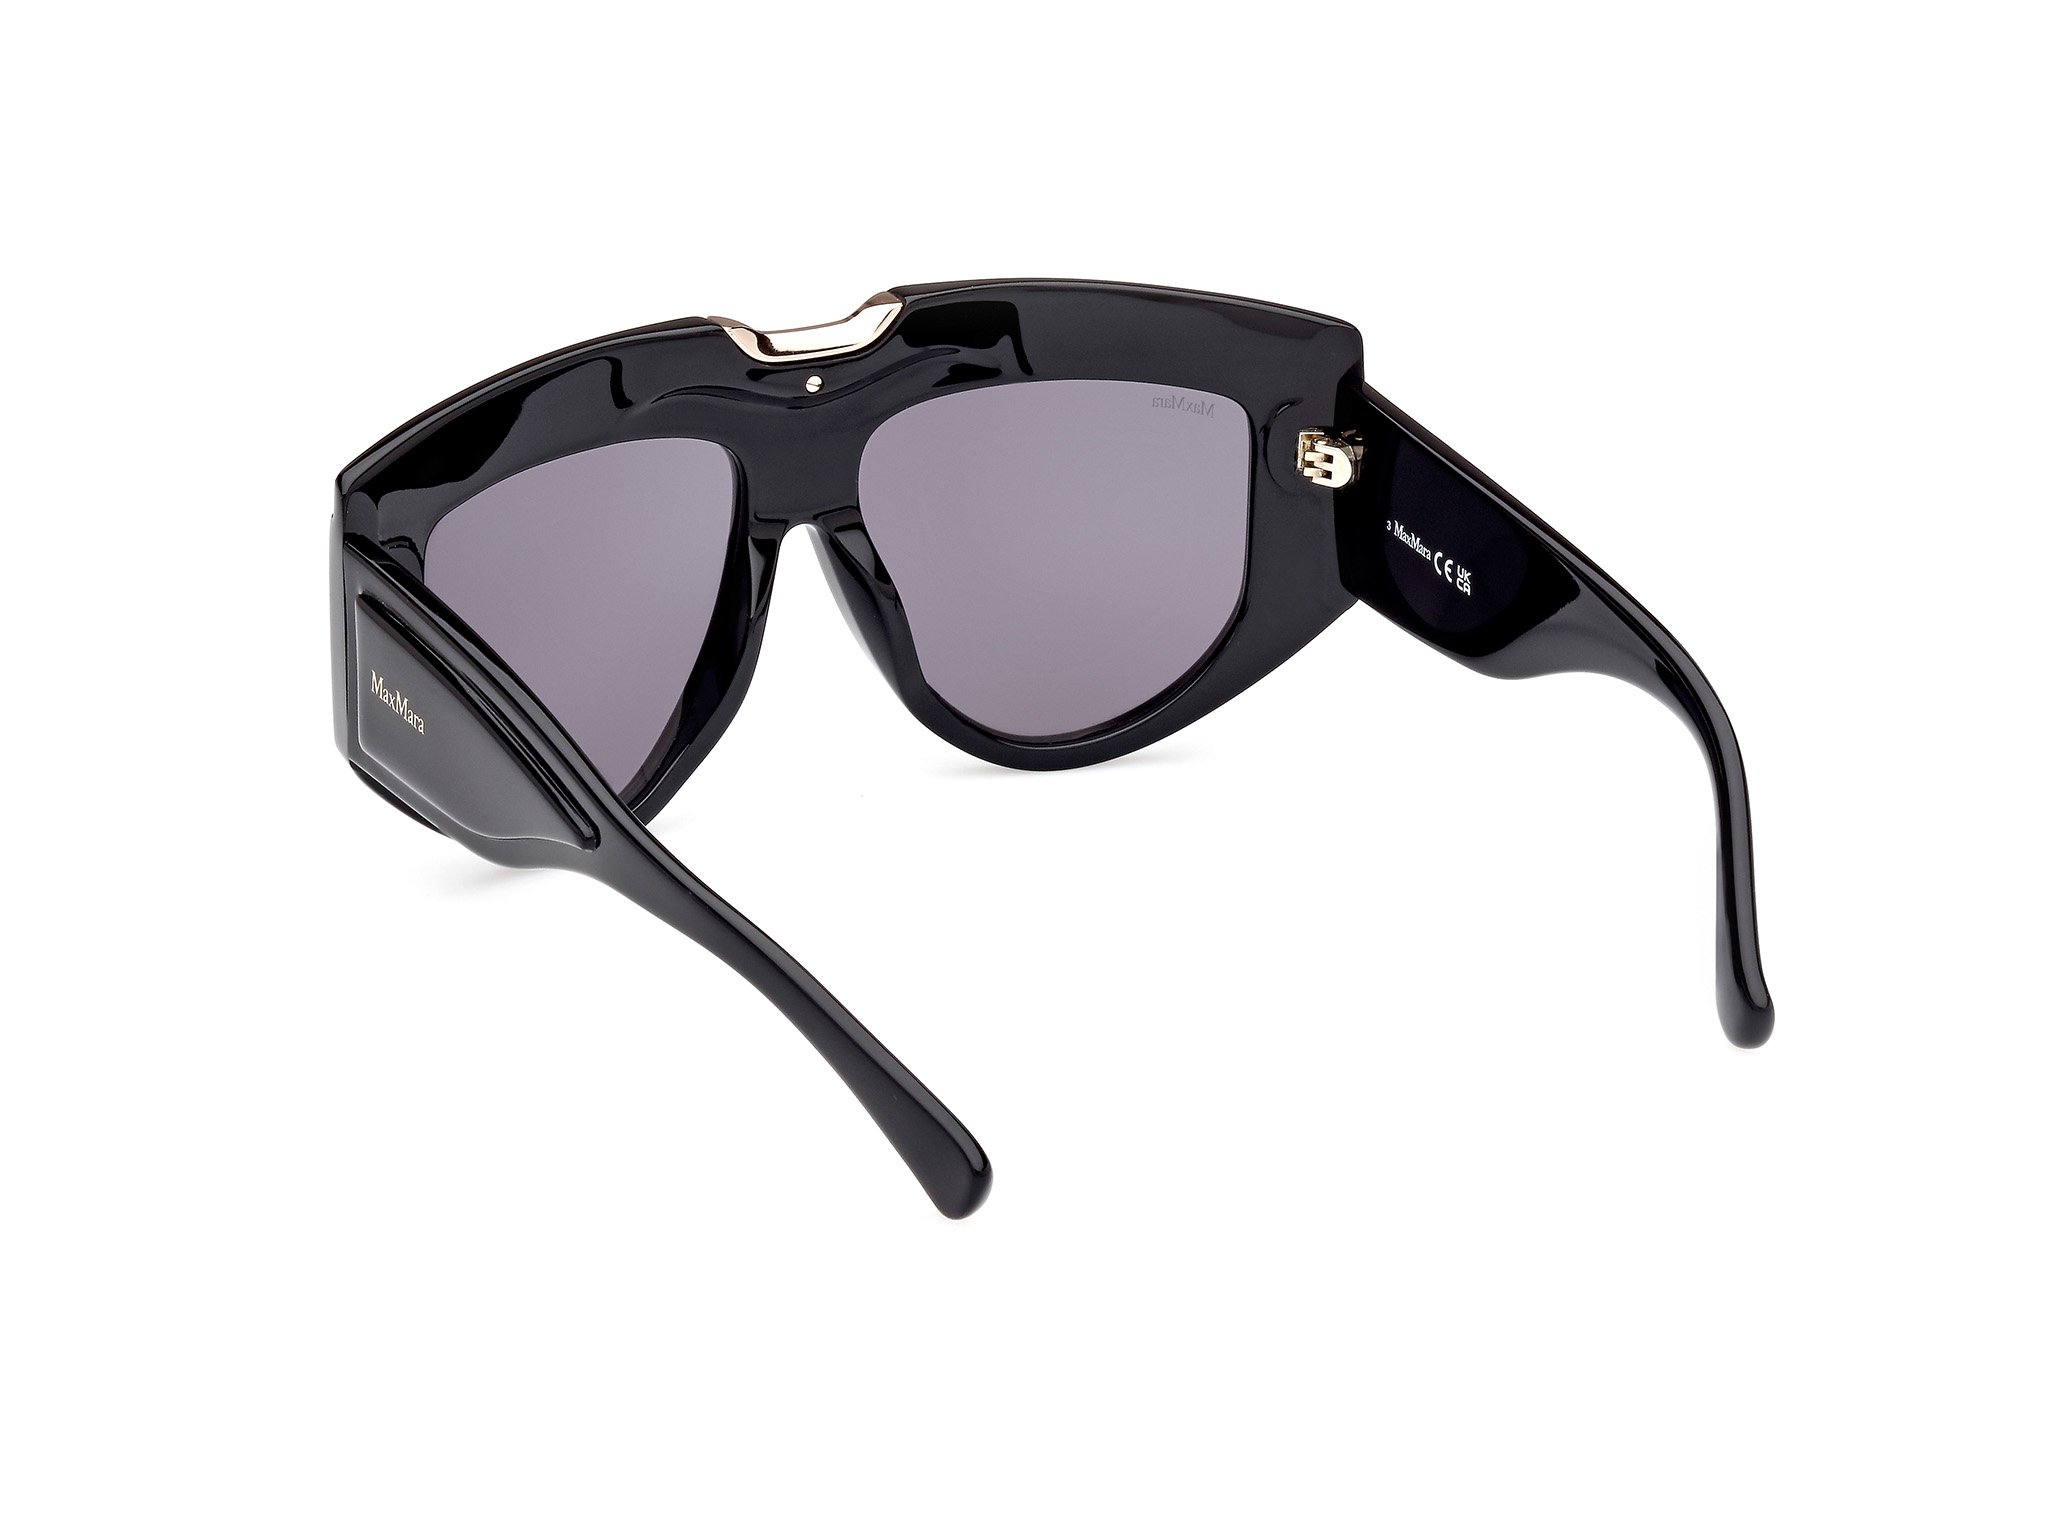 Das Bild zeigt die Sonnenbrille MM0084 01A von der Marke Max Mara in Schwarz.